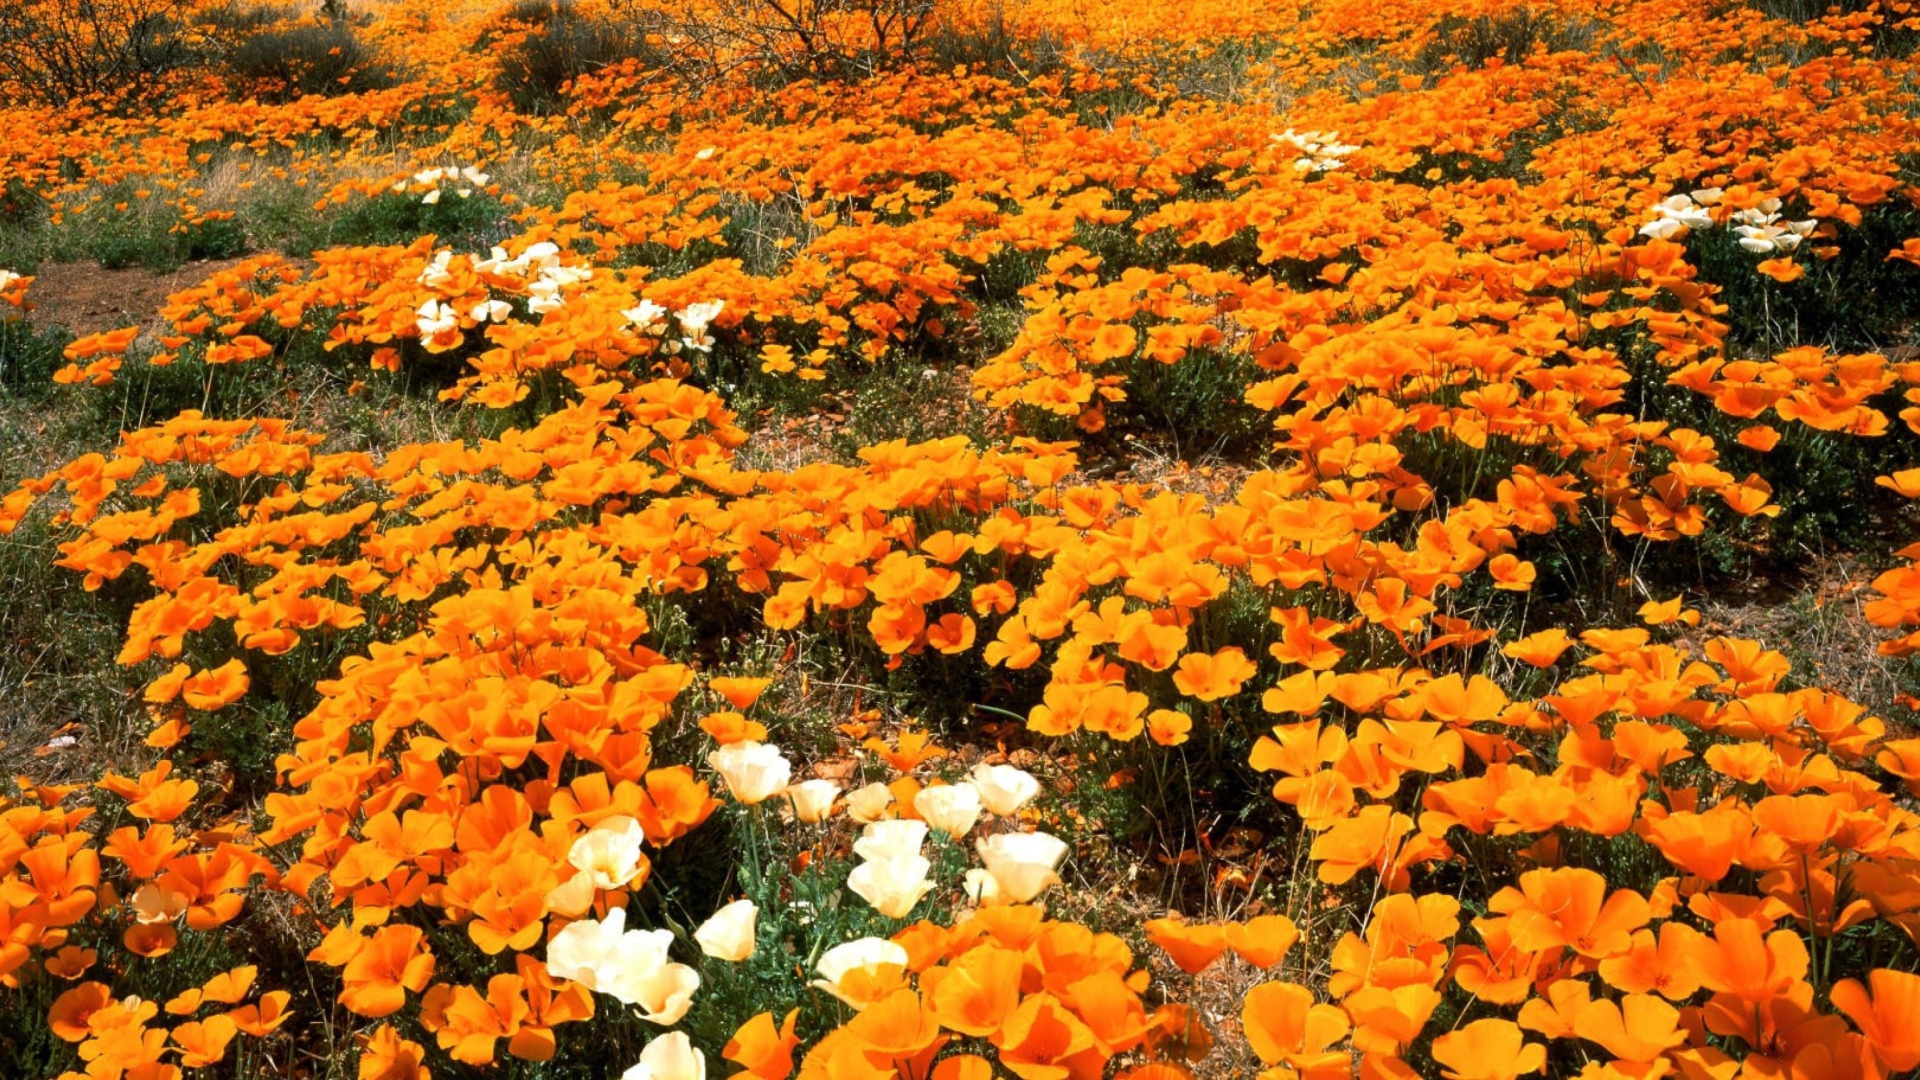 Field Of Orange Flowers wallpaper 1920x1080